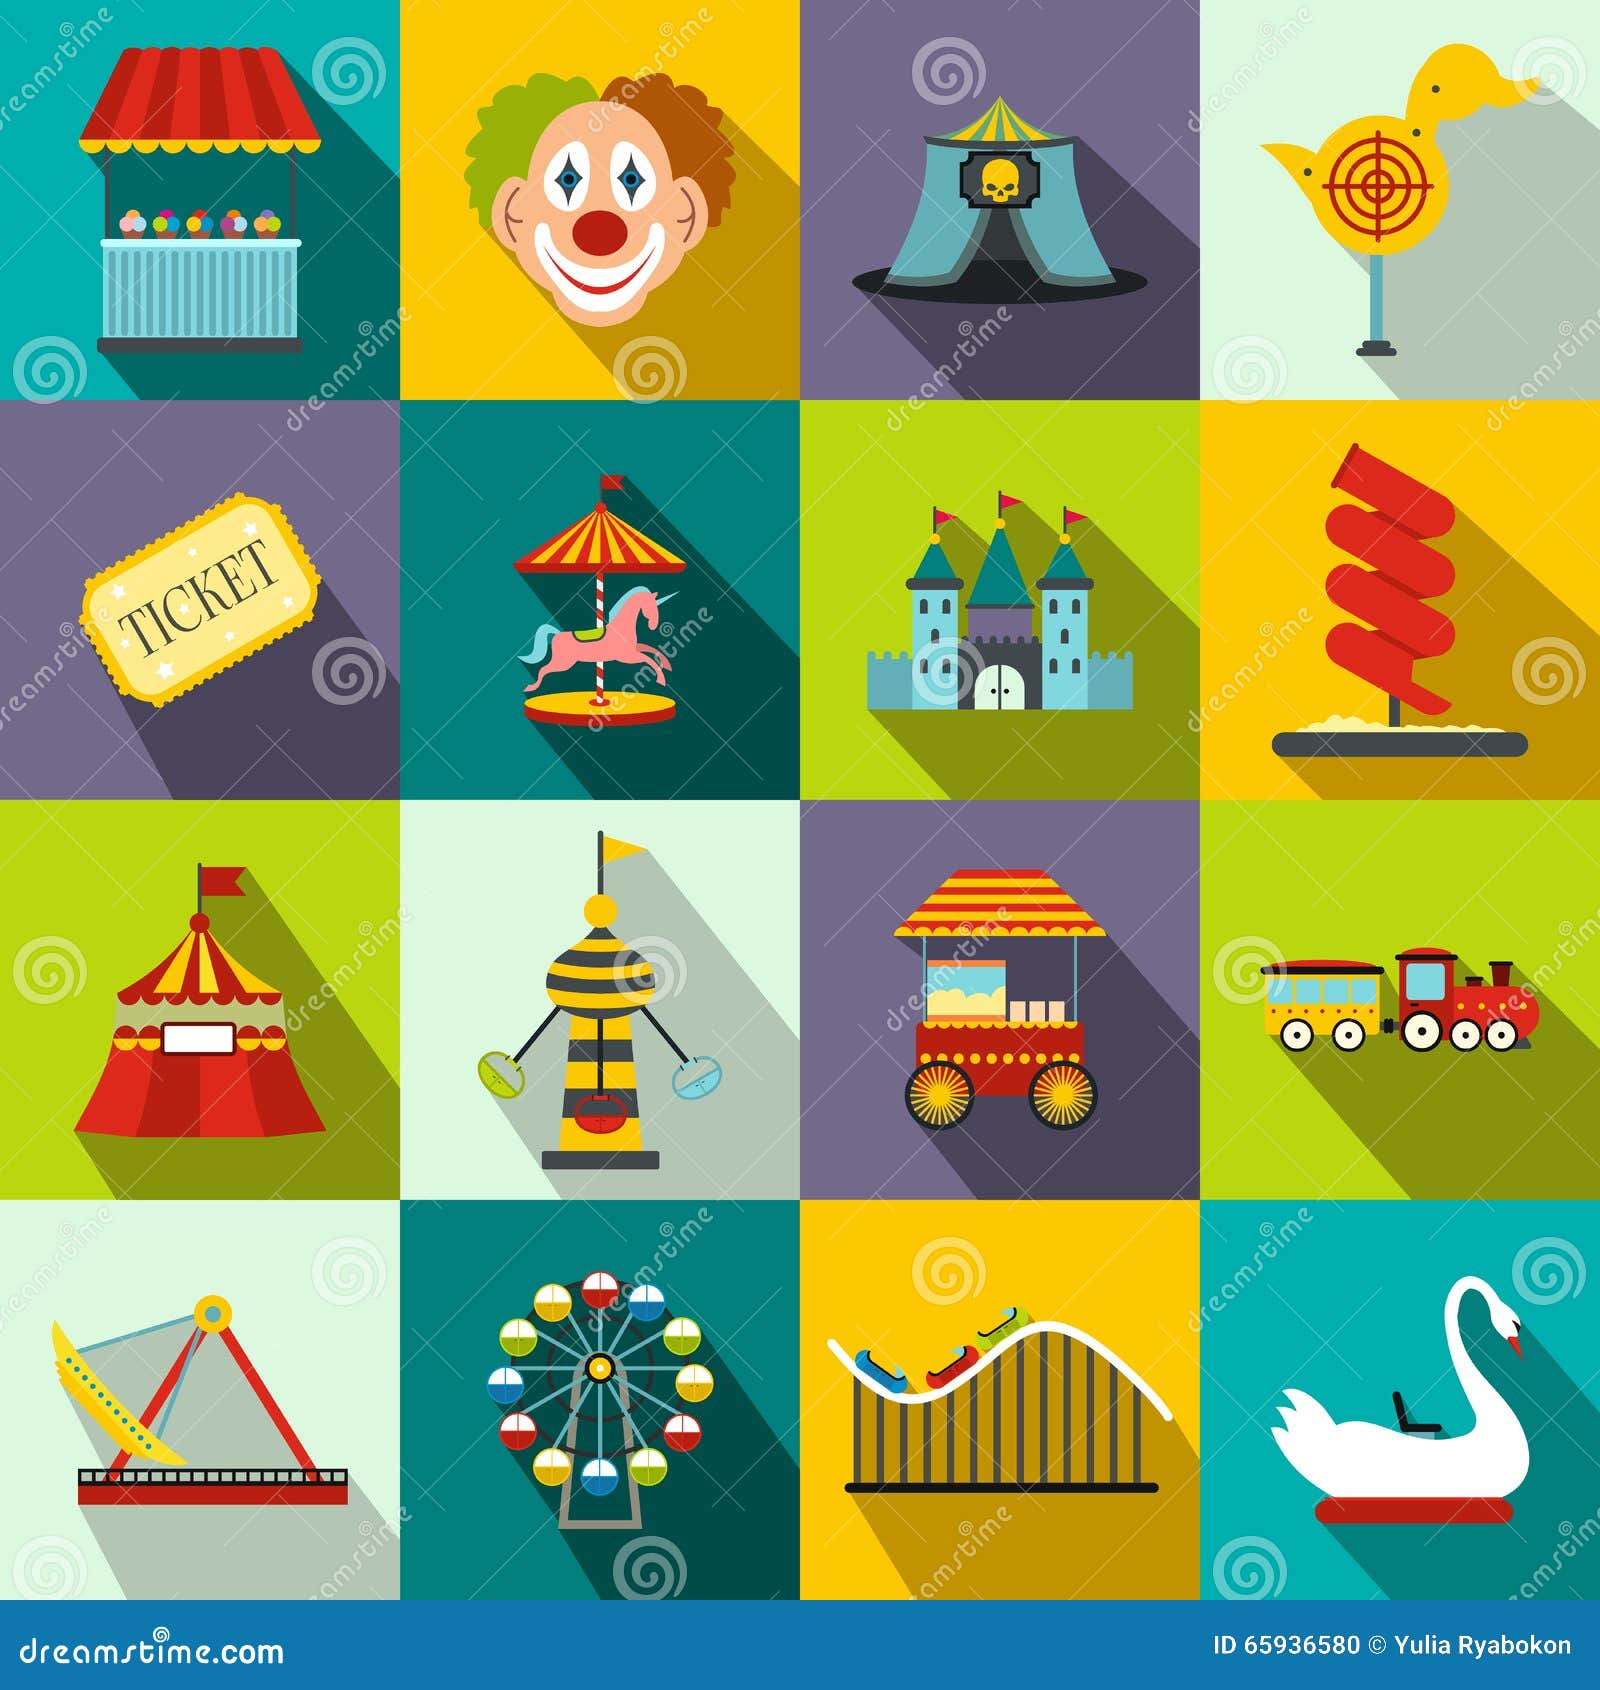 amusement park flat icons set